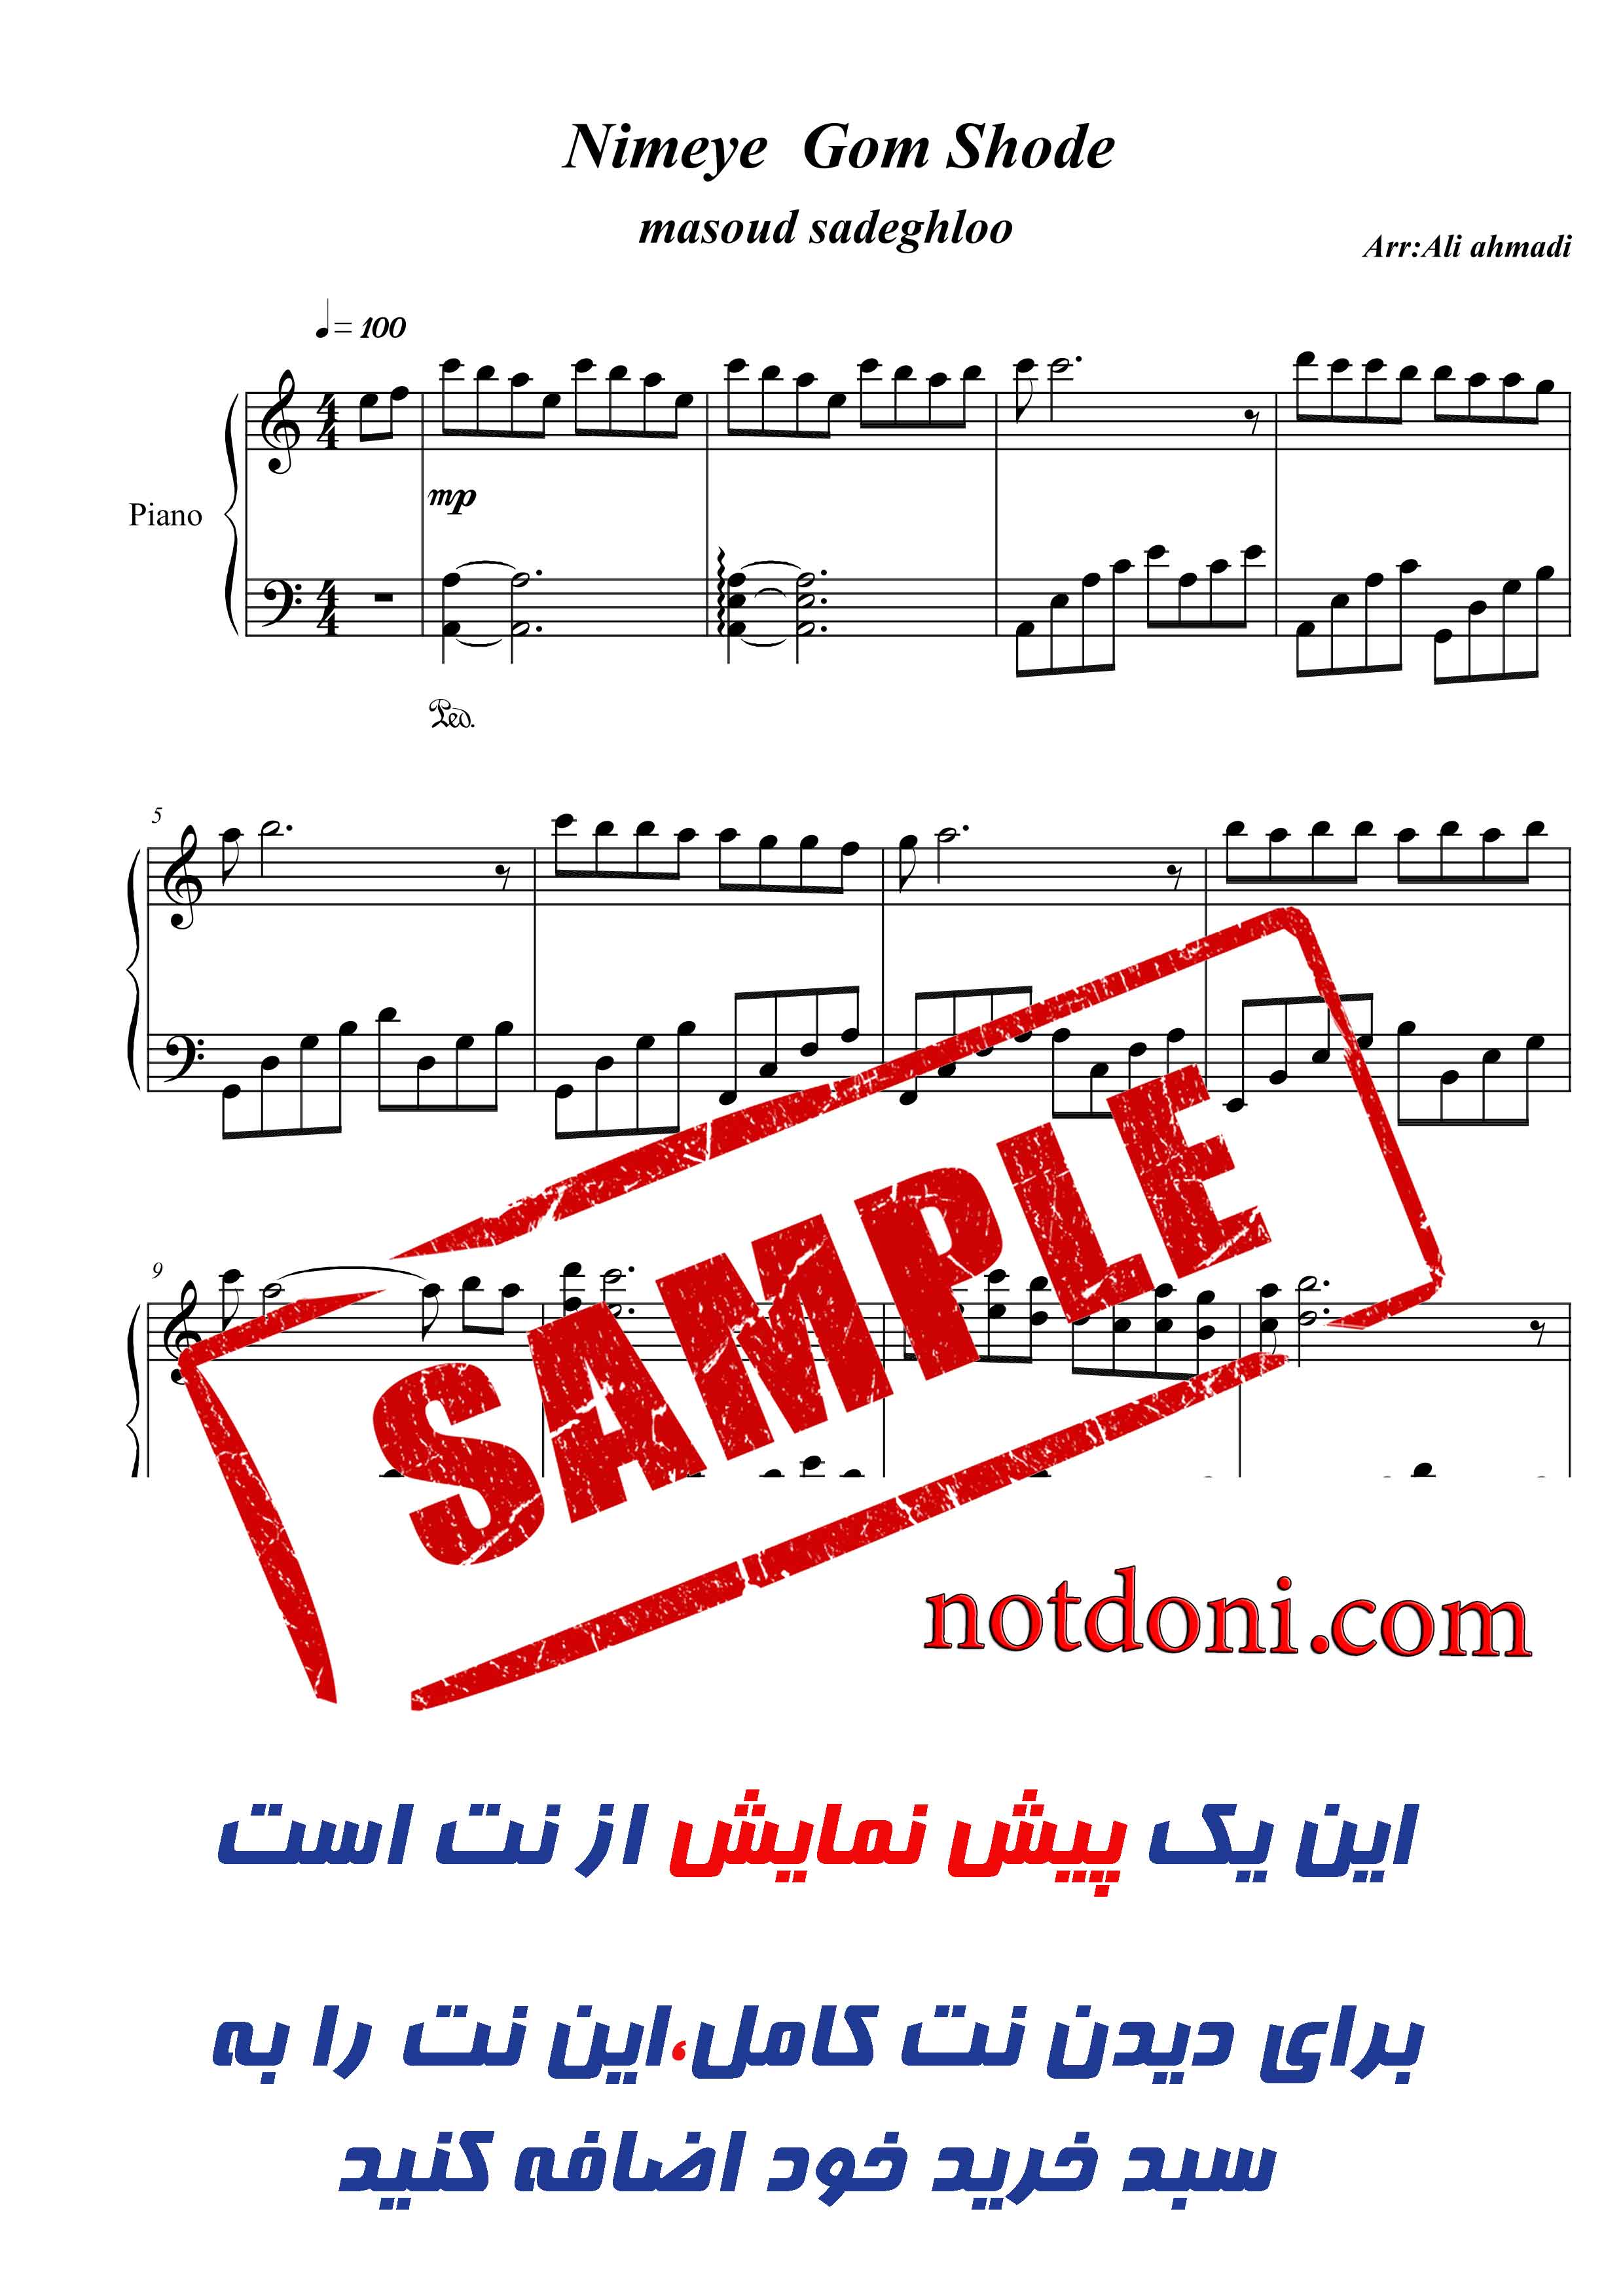 نت پیانوی آهنگ نیمه گمشده از مسعود صادقلو